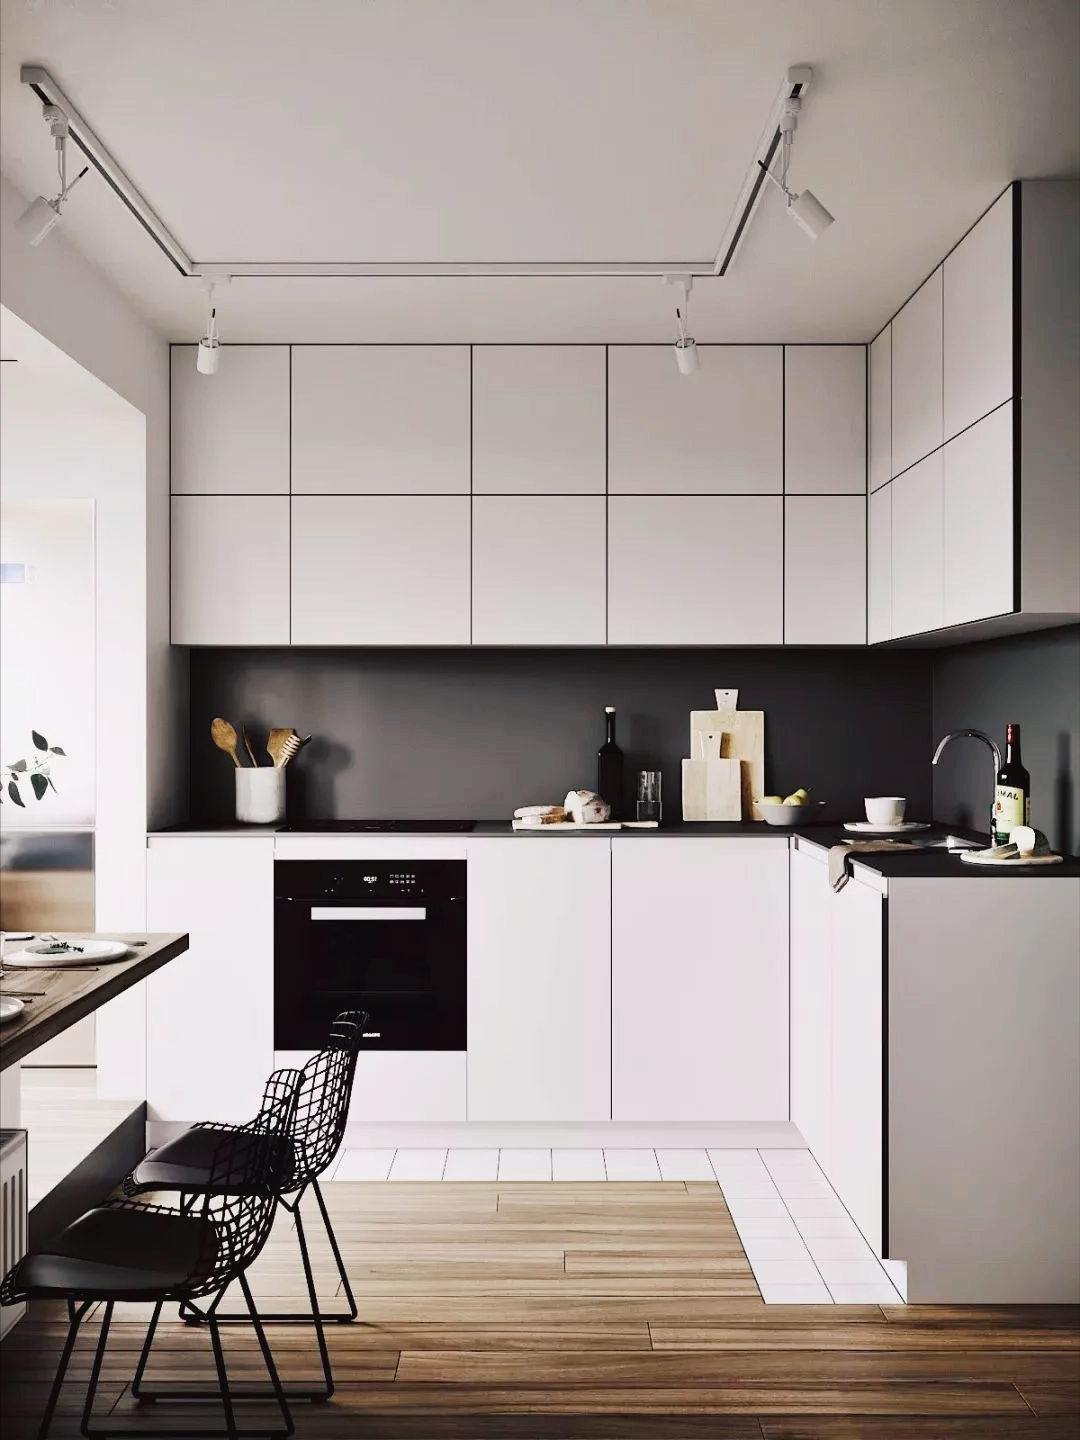 l型橱柜适合小户型厨房,规划动线更合理,空间更宽敞